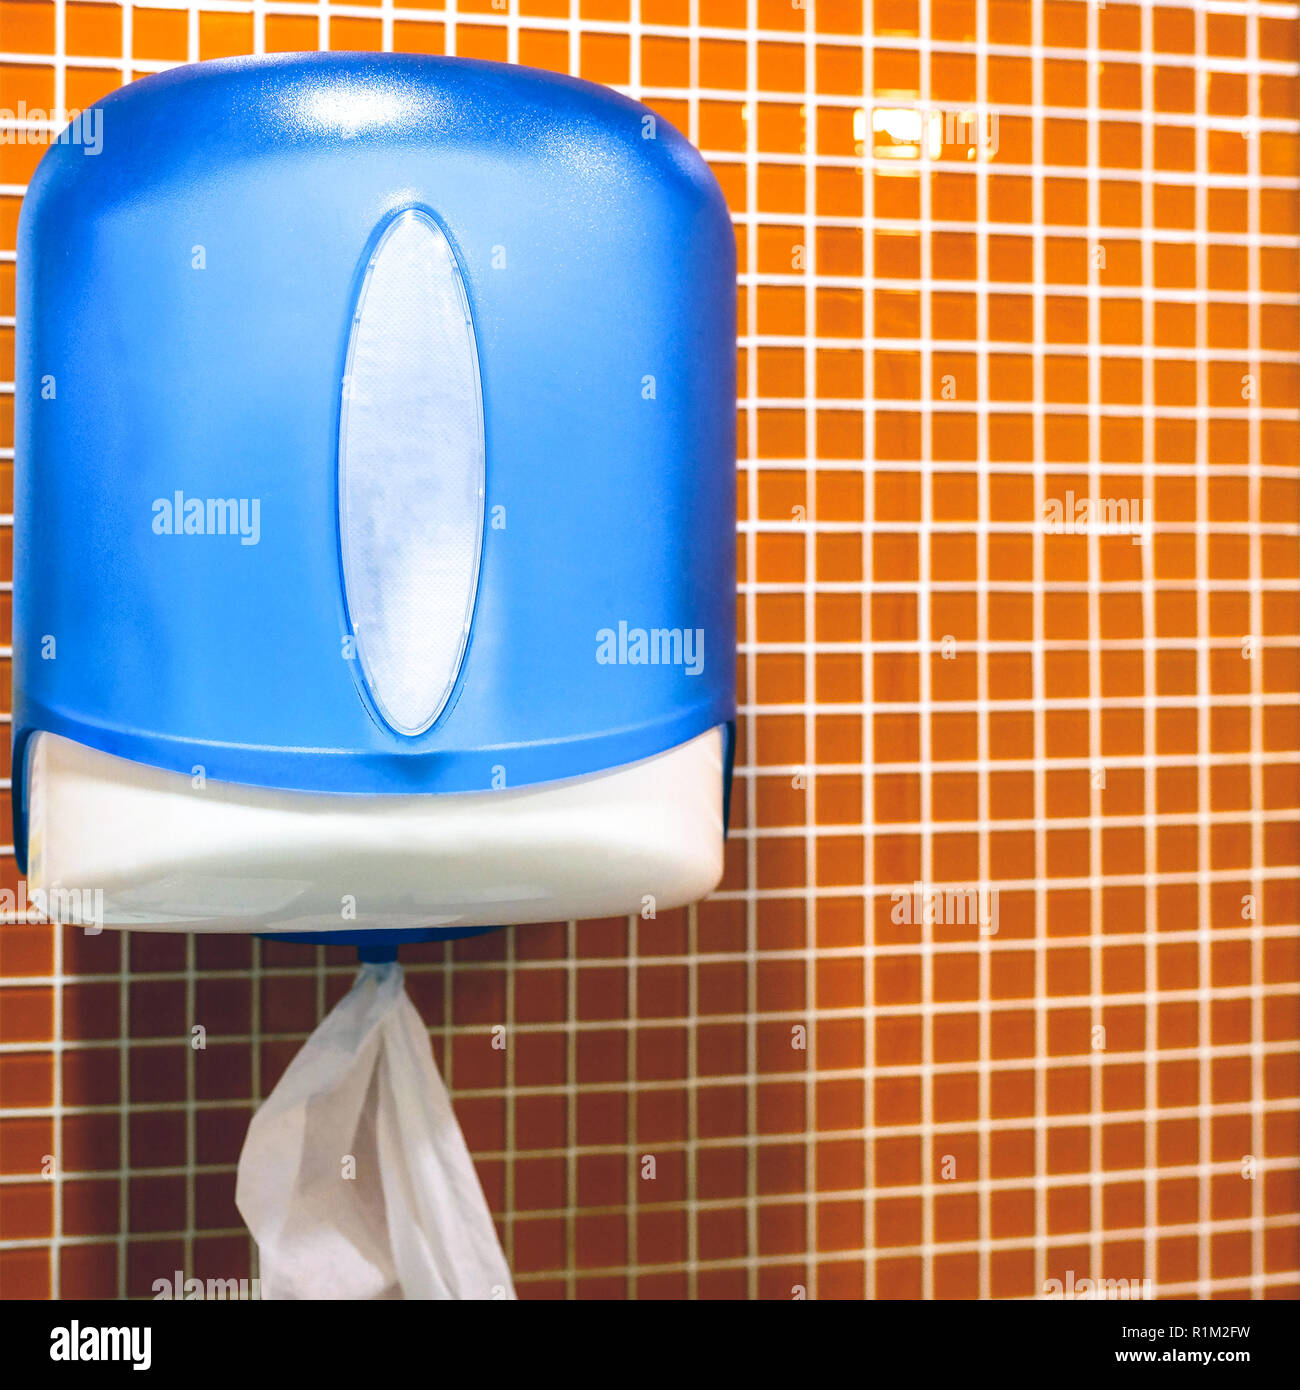 Papier Handtücher auf der Toilette. Papier Handtuch Spender Stockfotografie  - Alamy